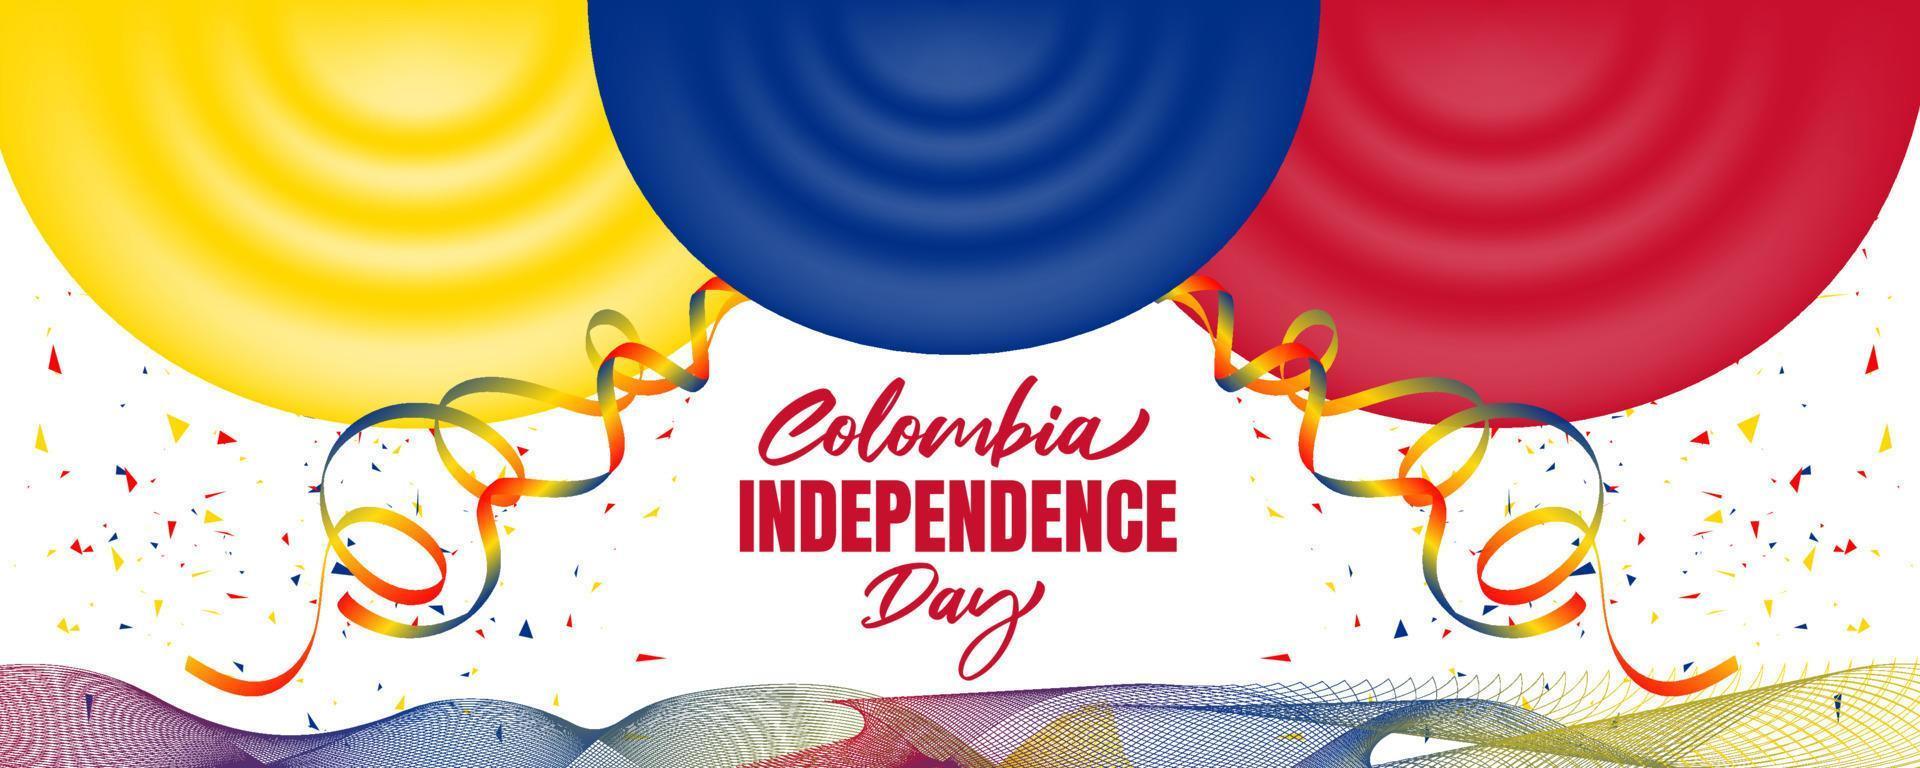 dia da independência da colômbia com bandeira da colômbia acenando e design de fundo de cor branca de fita colorida vetor